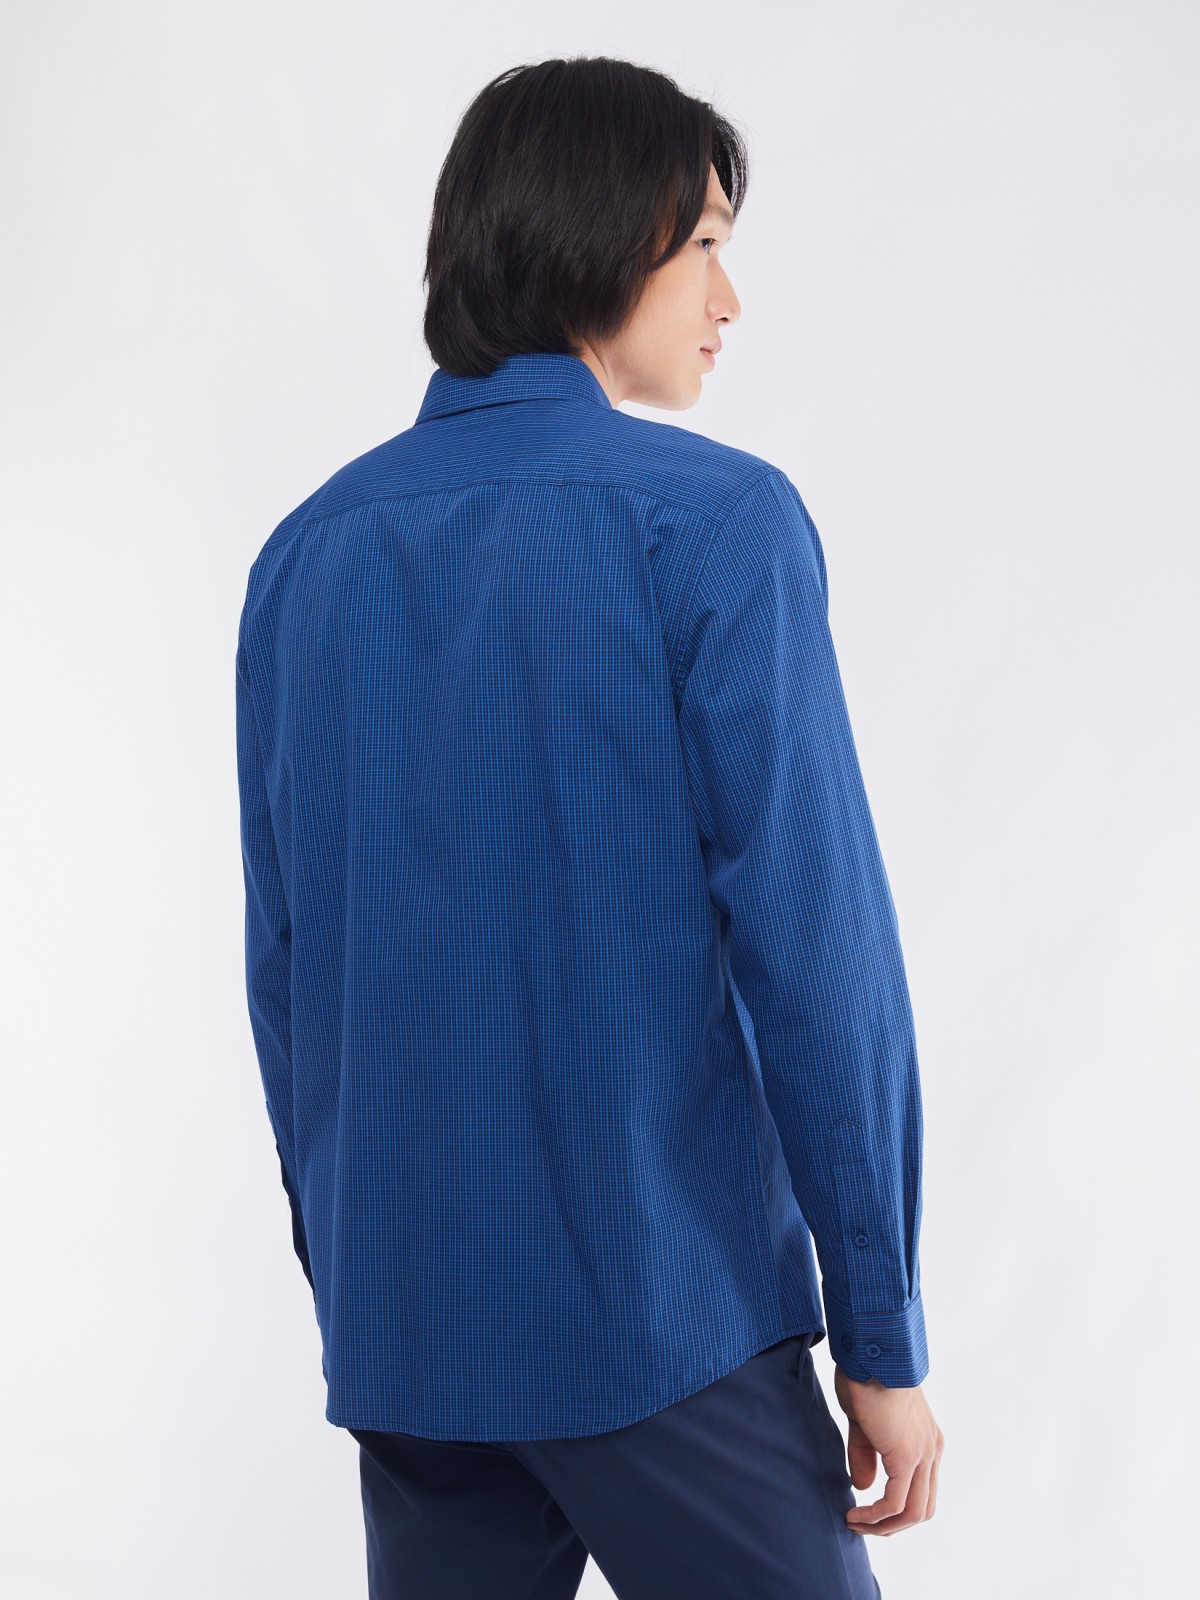 Офисная рубашка прямого силуэта с узором в клетку zolla 014112159062, цвет голубой, размер M - фото 6